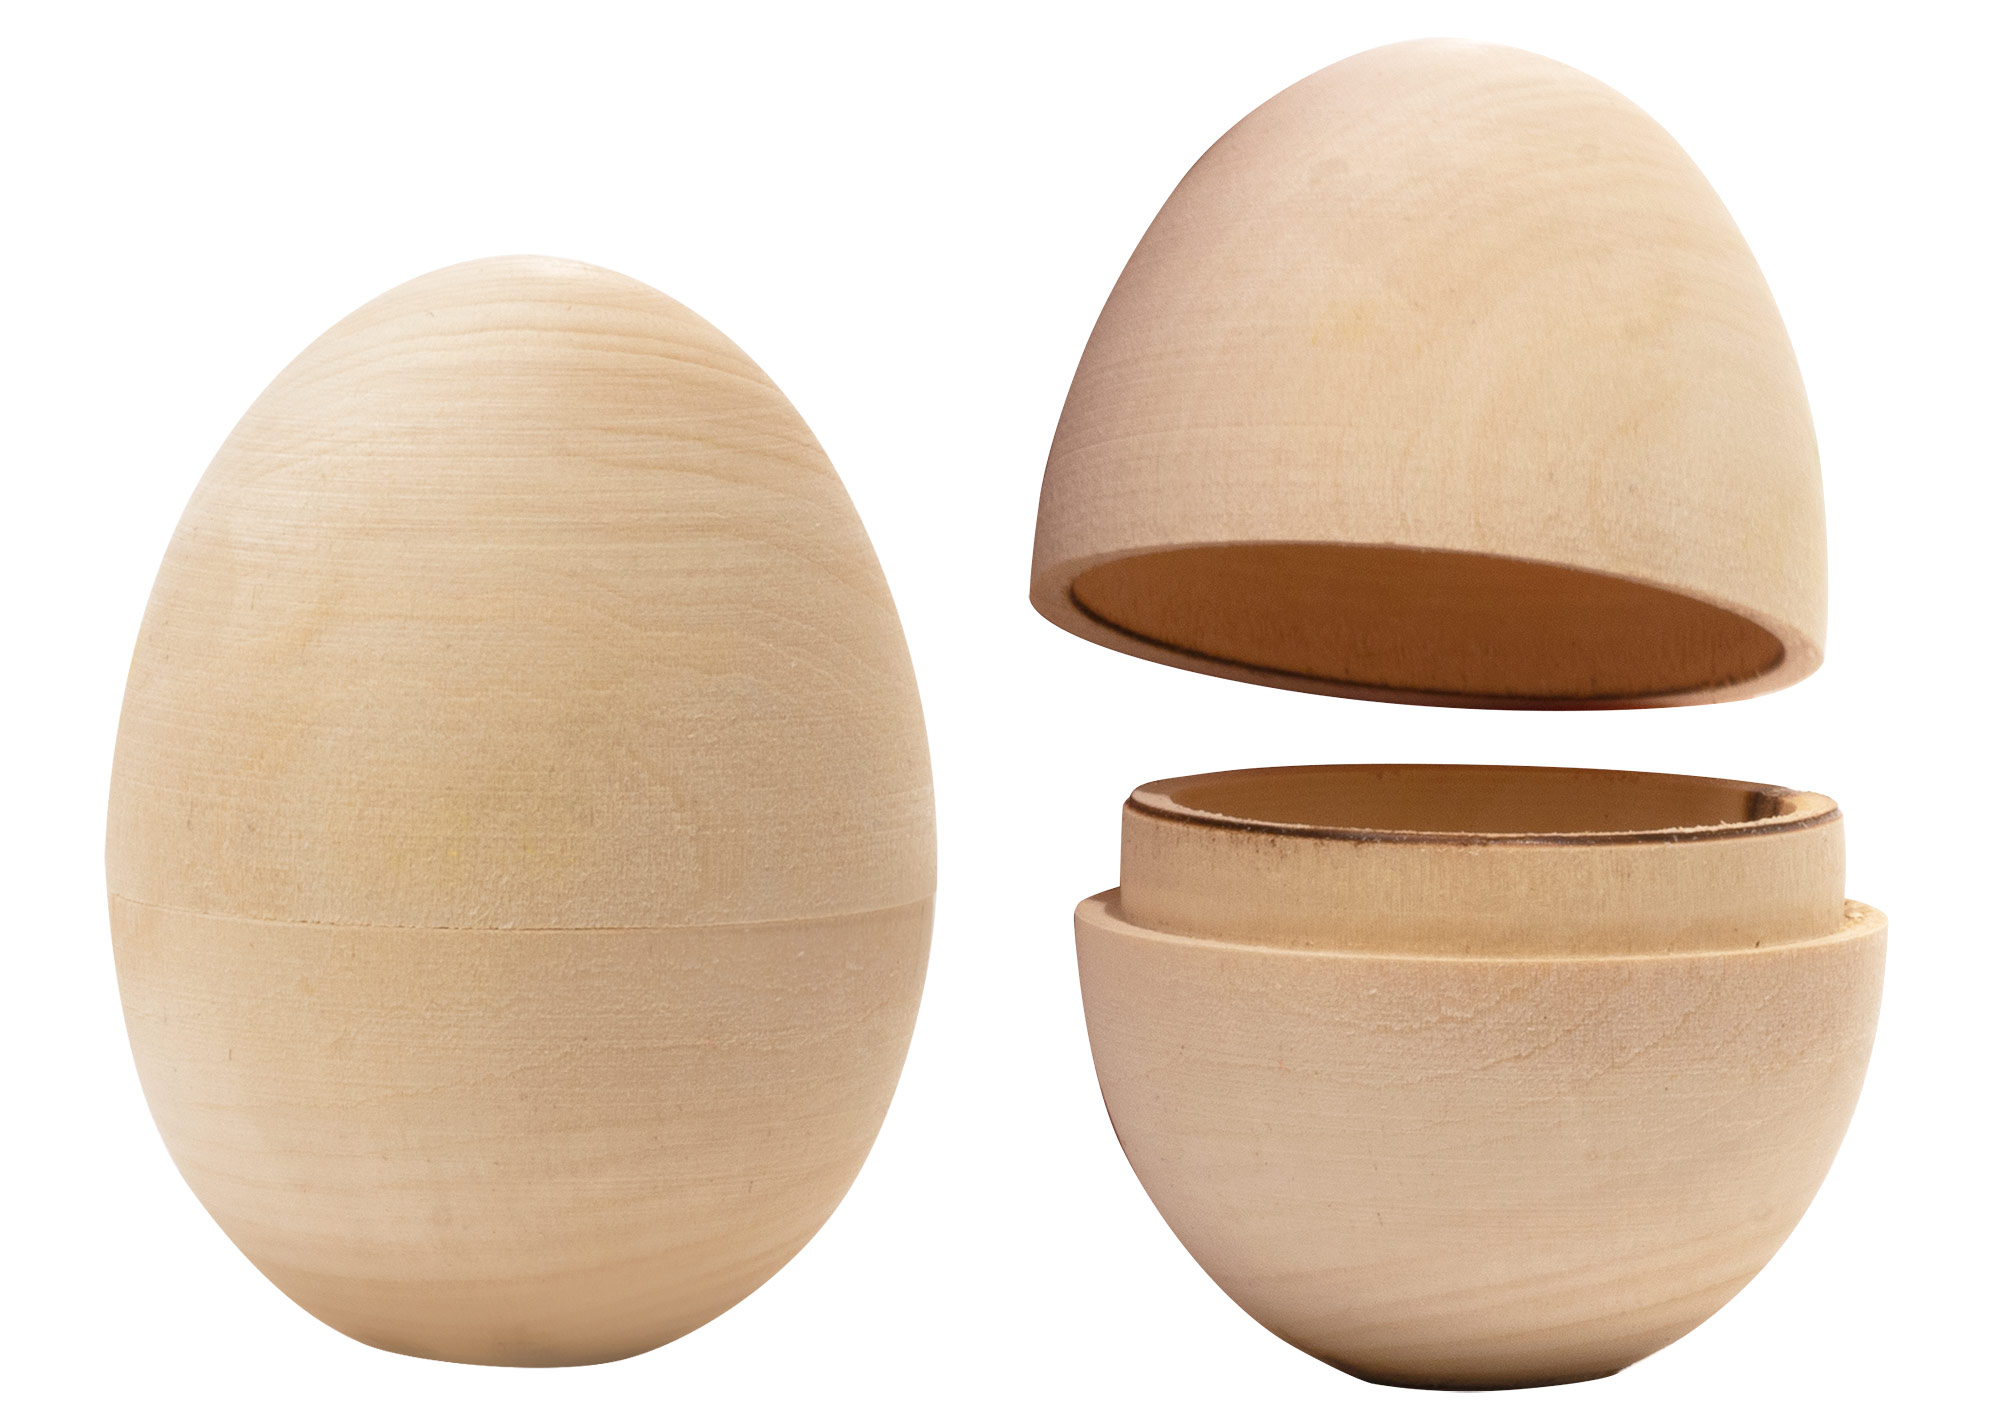 Buy Blank Hollow Wooden Egg 2.75" at GoldenCockerel.com